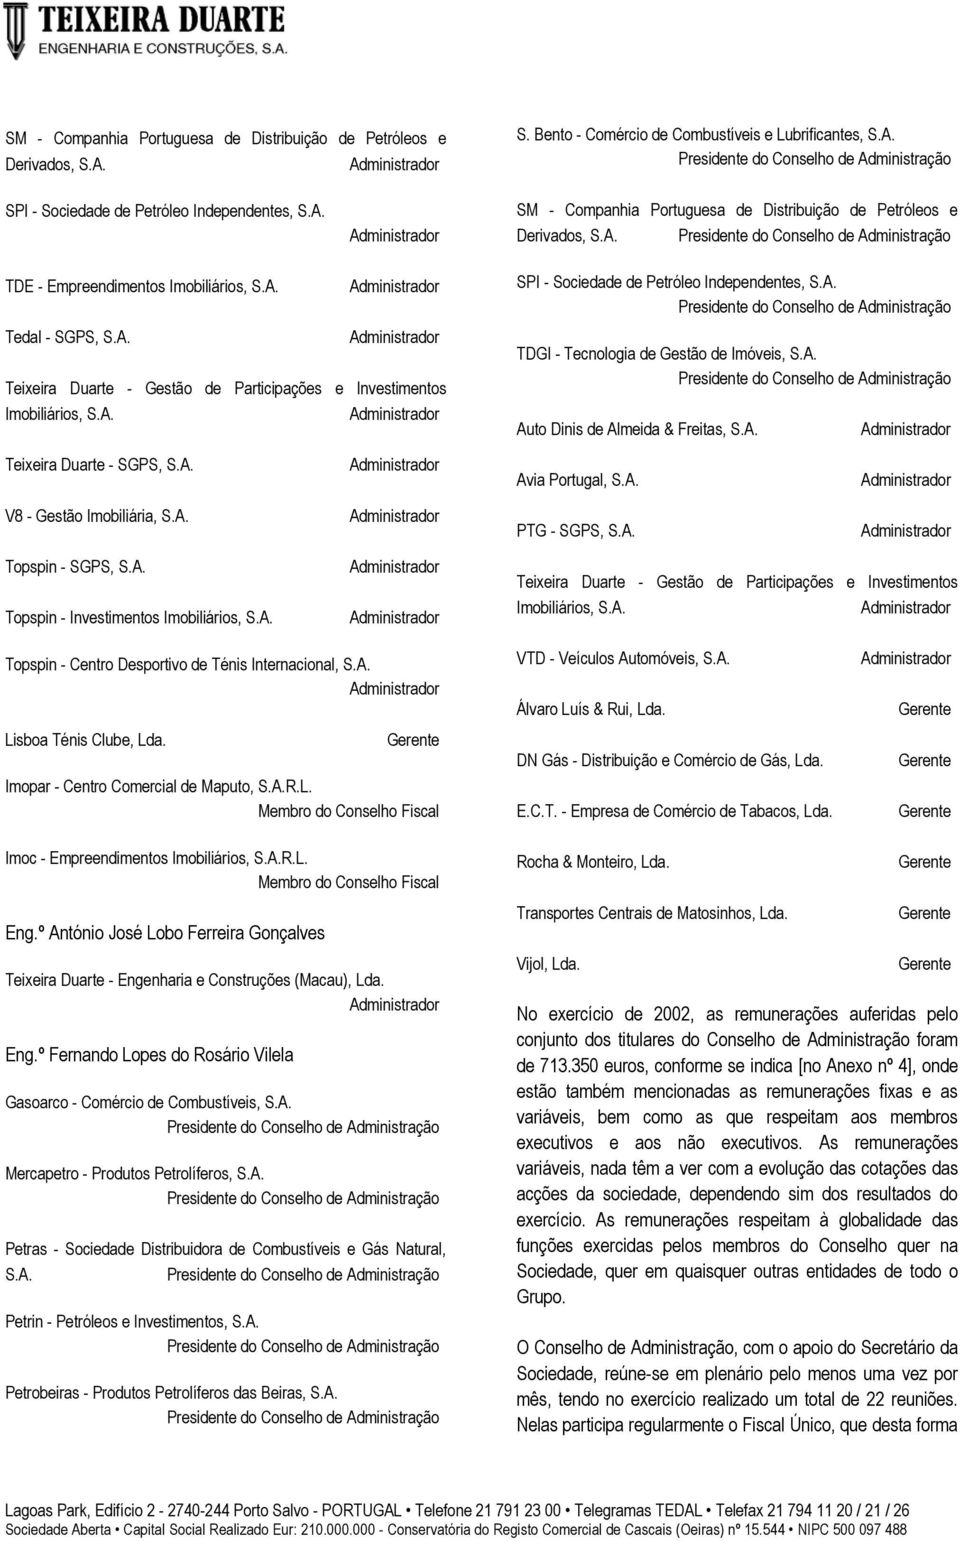 A. Auto Dinis de Almeida & Freitas, S.A. Teixeira Duarte - SGPS, S.A. Avia Portugal, S.A. V8 - Gestão Imobiliária, S.A. PTG - SGPS, S.A. Topspin - SGPS, S.A. Topspin - Investimentos Imobiliários, S.A. Teixeira Duarte - Gestão de Participações e Investimentos Imobiliários, S.